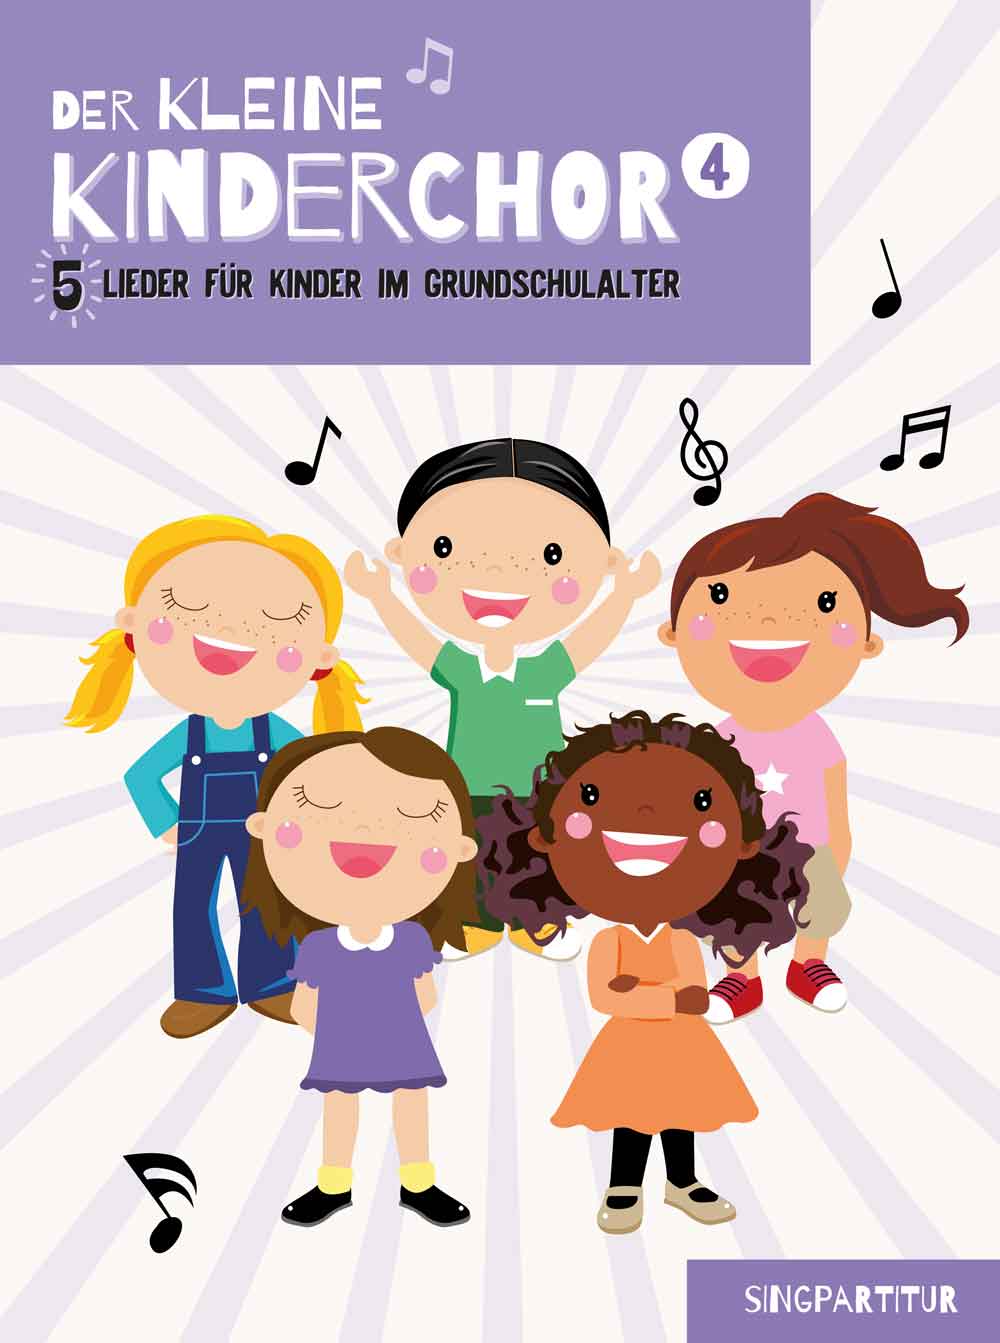 Der kleine Kinderchor 4: 5 Lieder für Kinder im Grundschulalter, SS, 2 Treble Voices, Choral Score